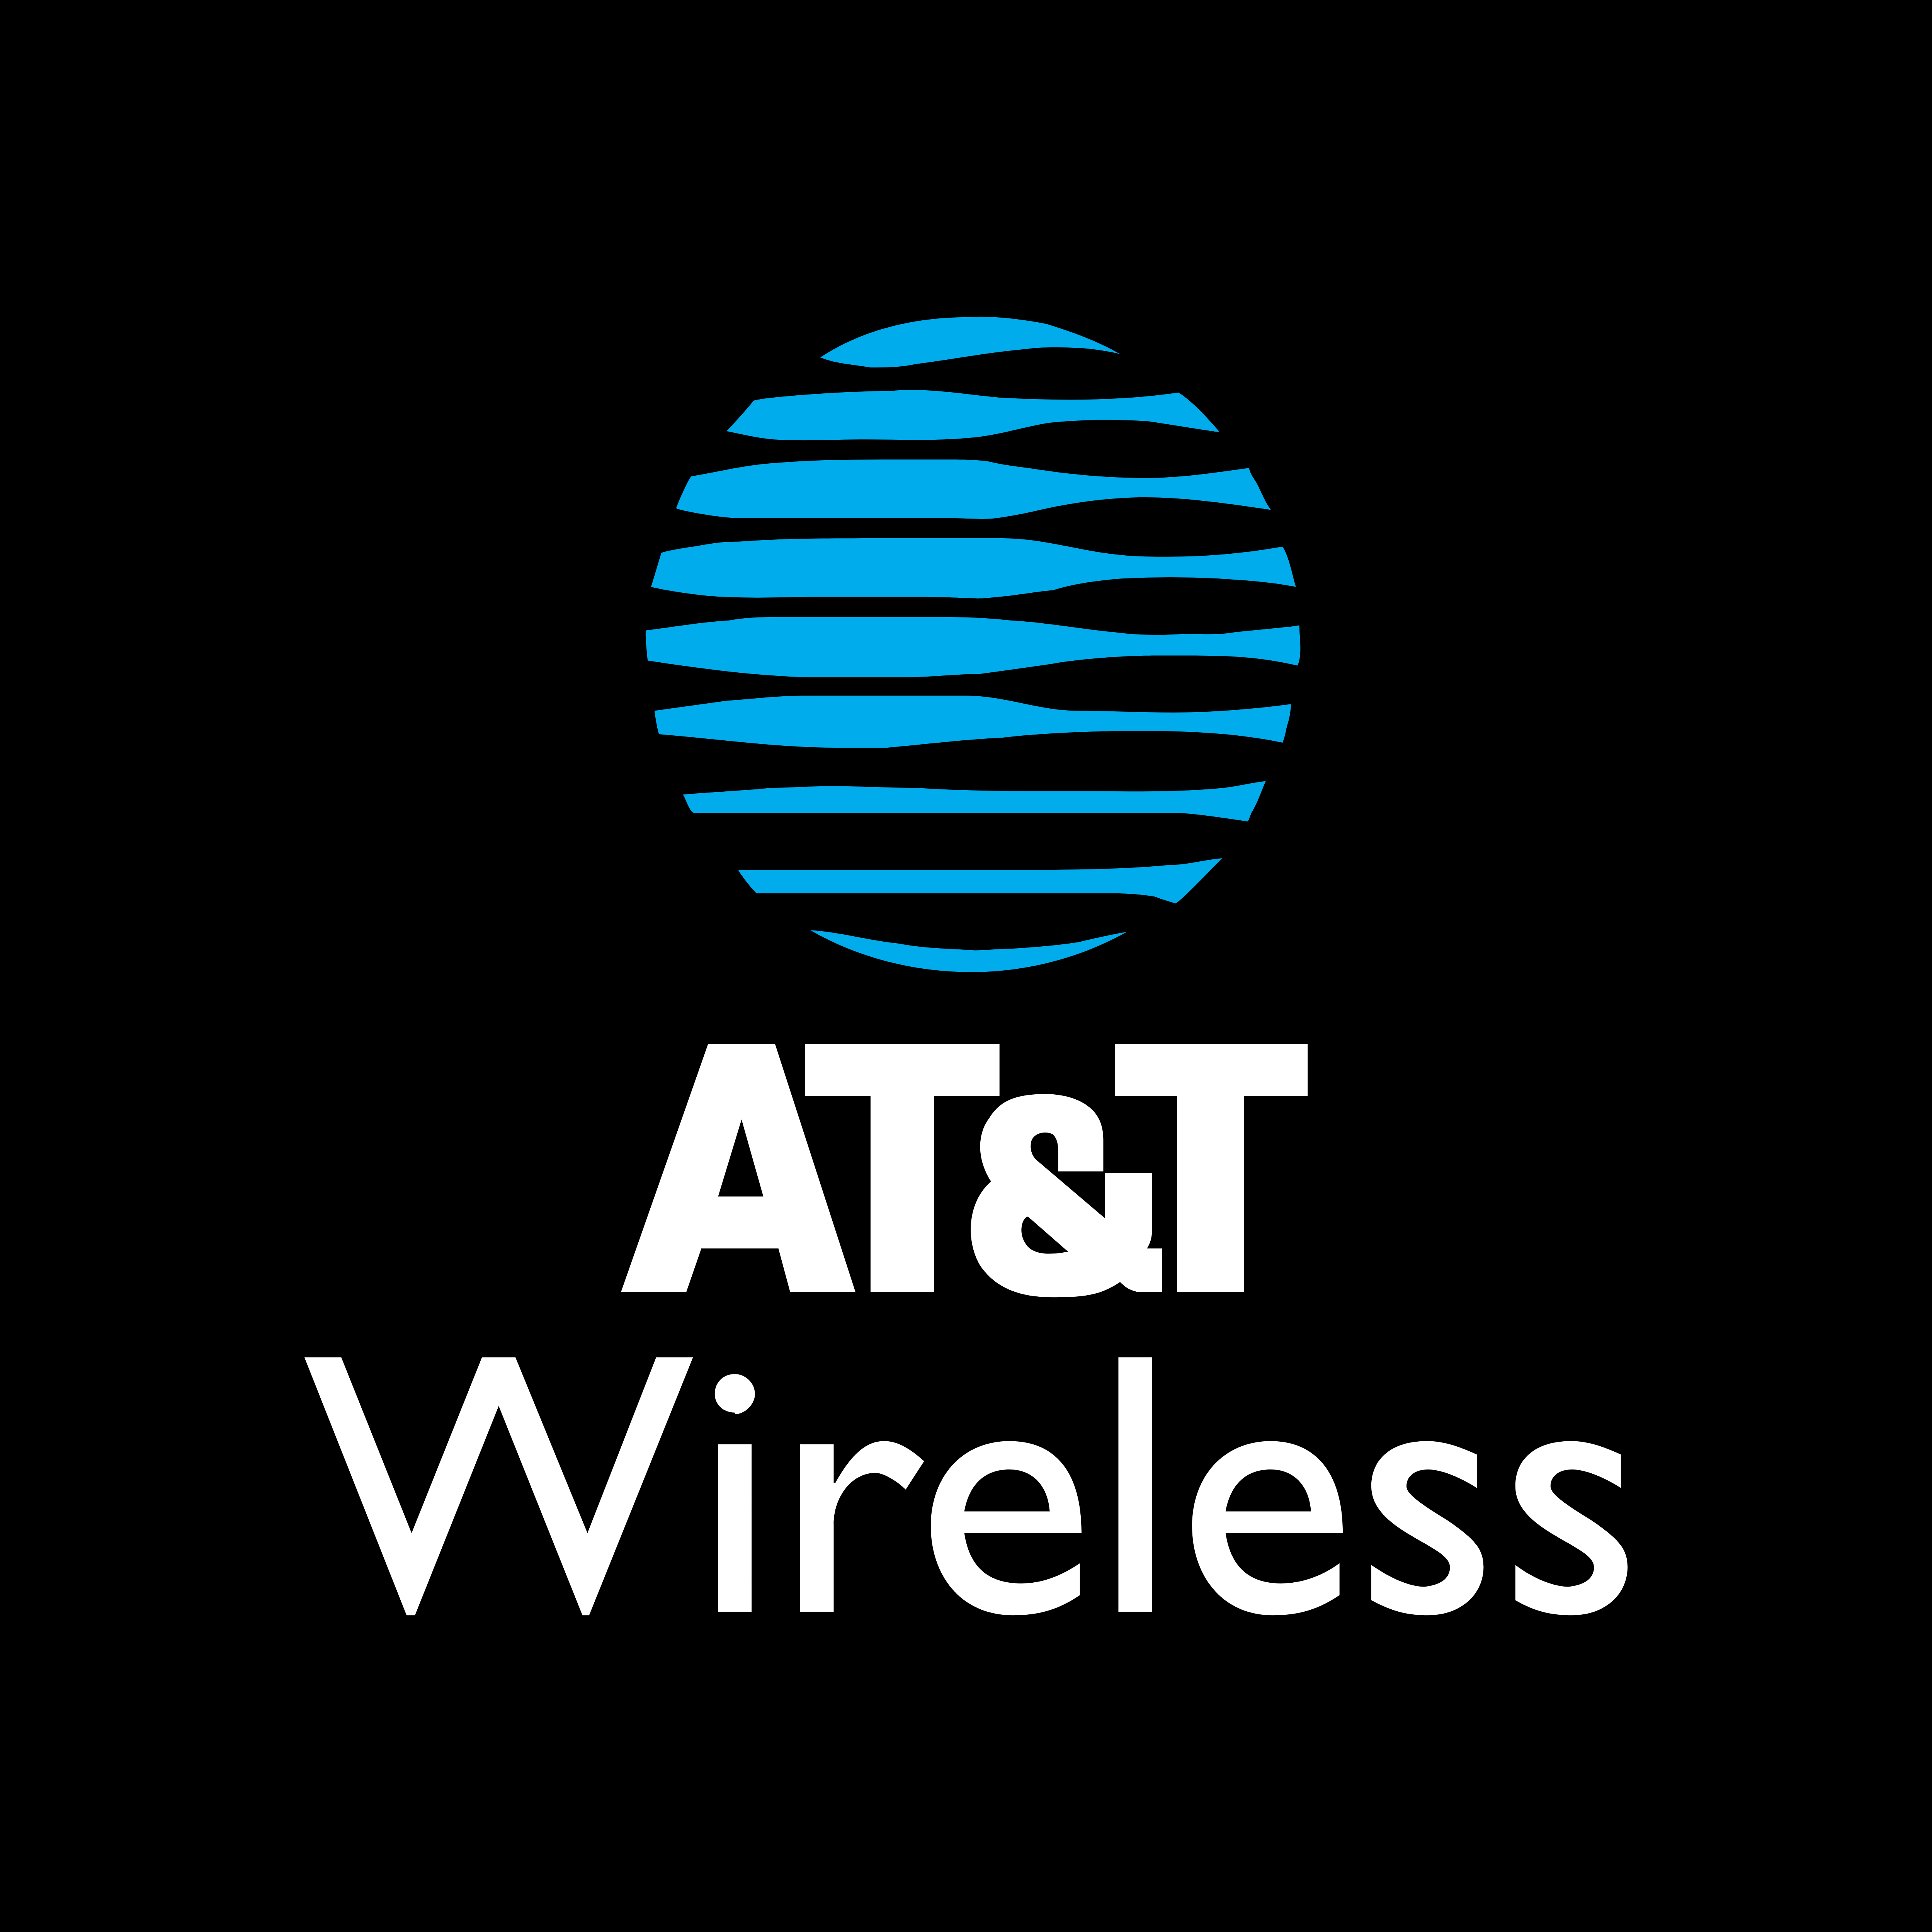 Wireless Company Logos